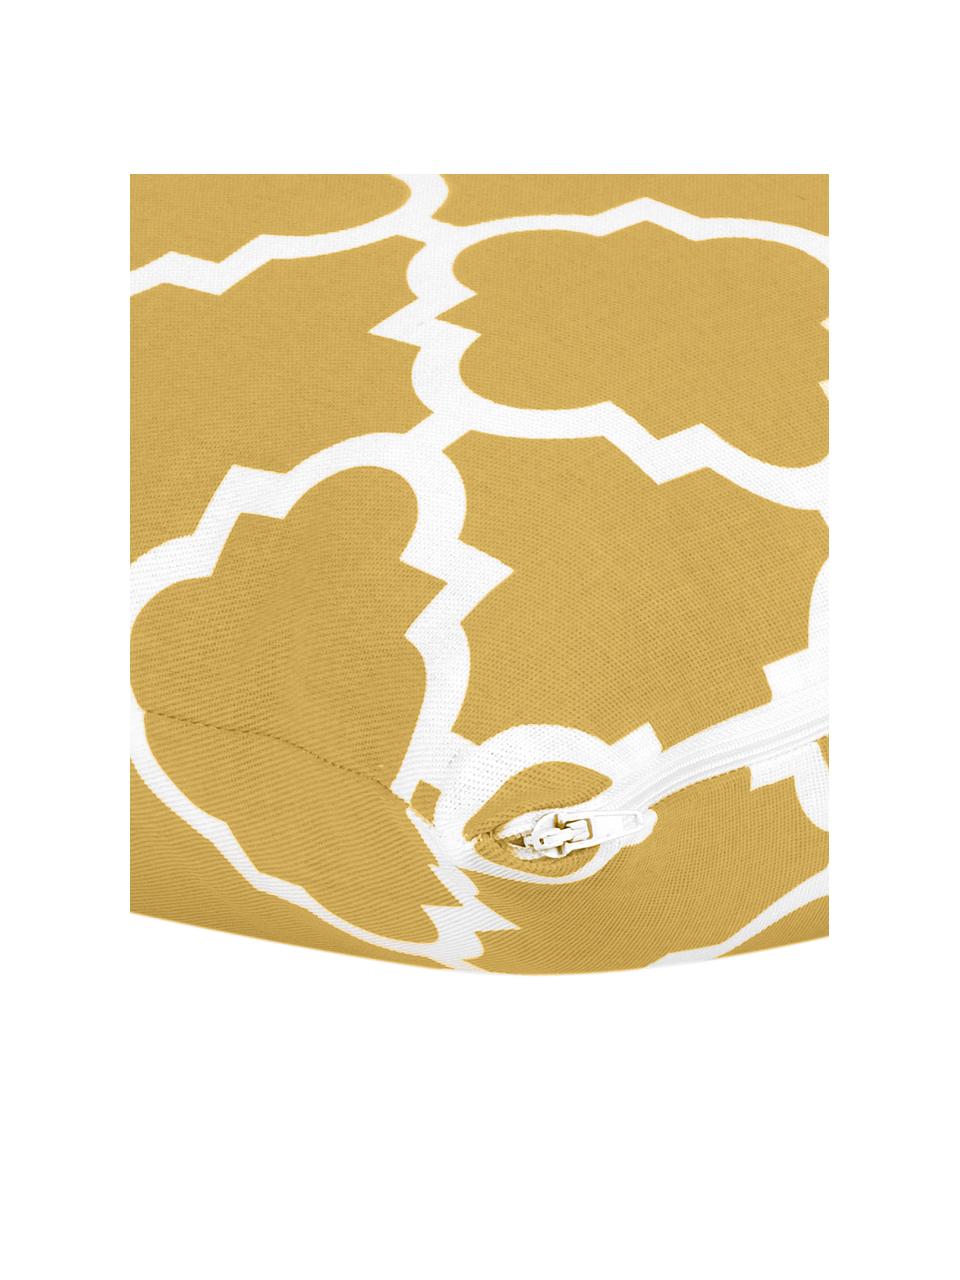 Federa arredo in cotone giallo senape con motivo grafico Lana, 100% cotone, Giallo senape, bianco, Larg. 45 x Lung. 45 cm